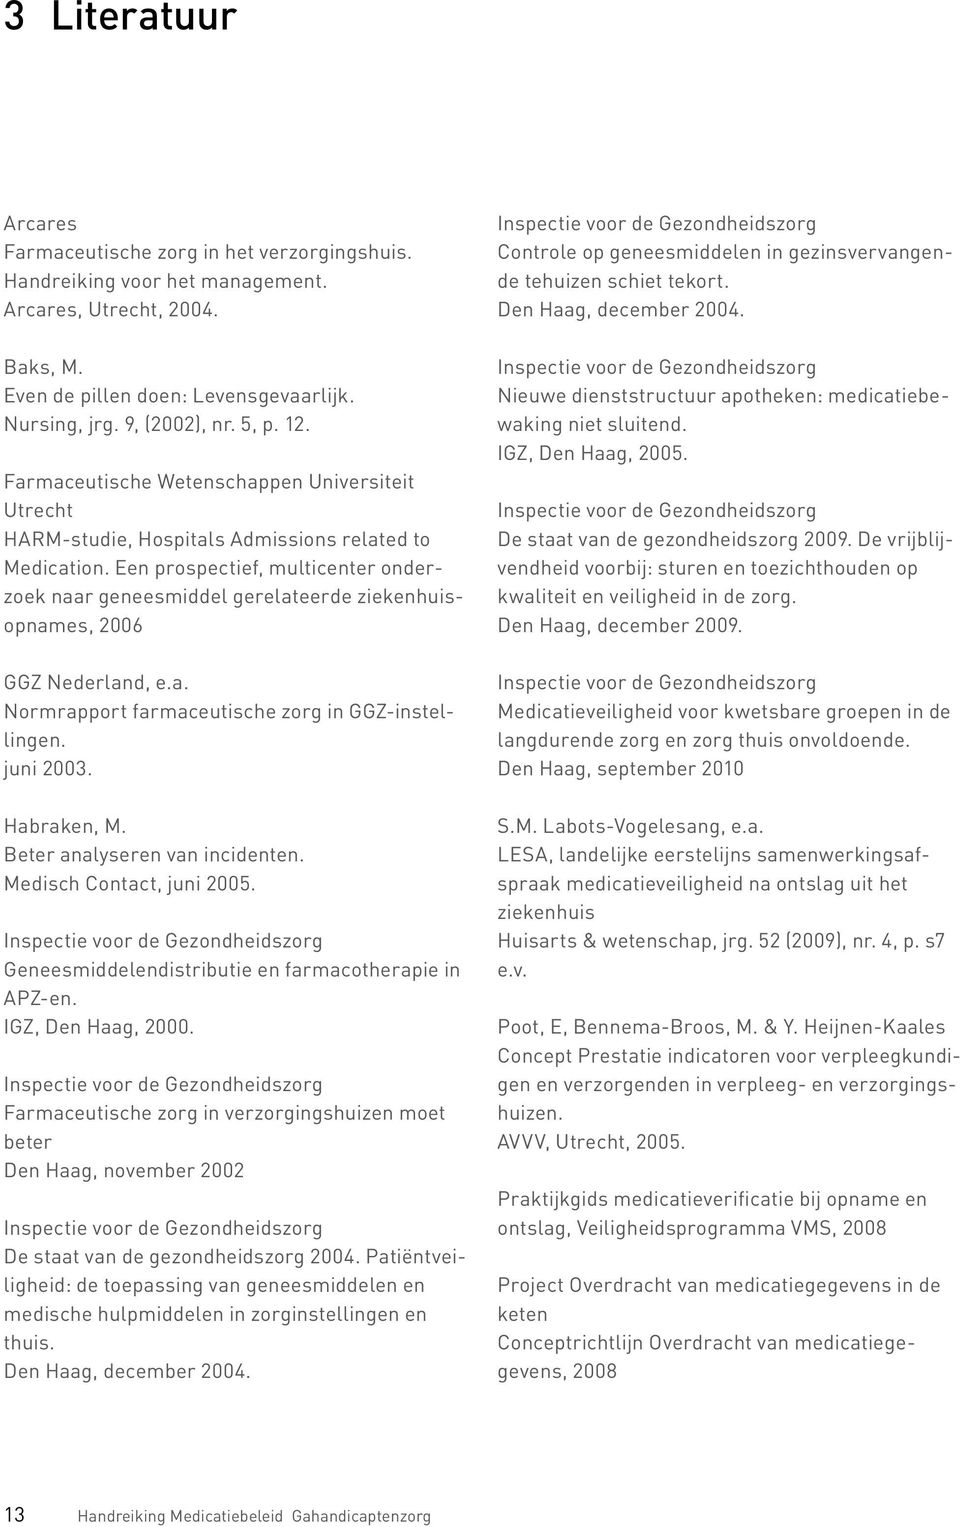 Een prospectief, multicenter onderzoek naar geneesmiddel gerelateerde ziekenhuisopnames, 2006 GGZ Nederland, e.a. Normrapport farmaceutische zorg in GGZ-instellingen. juni 2003. Habraken, M.